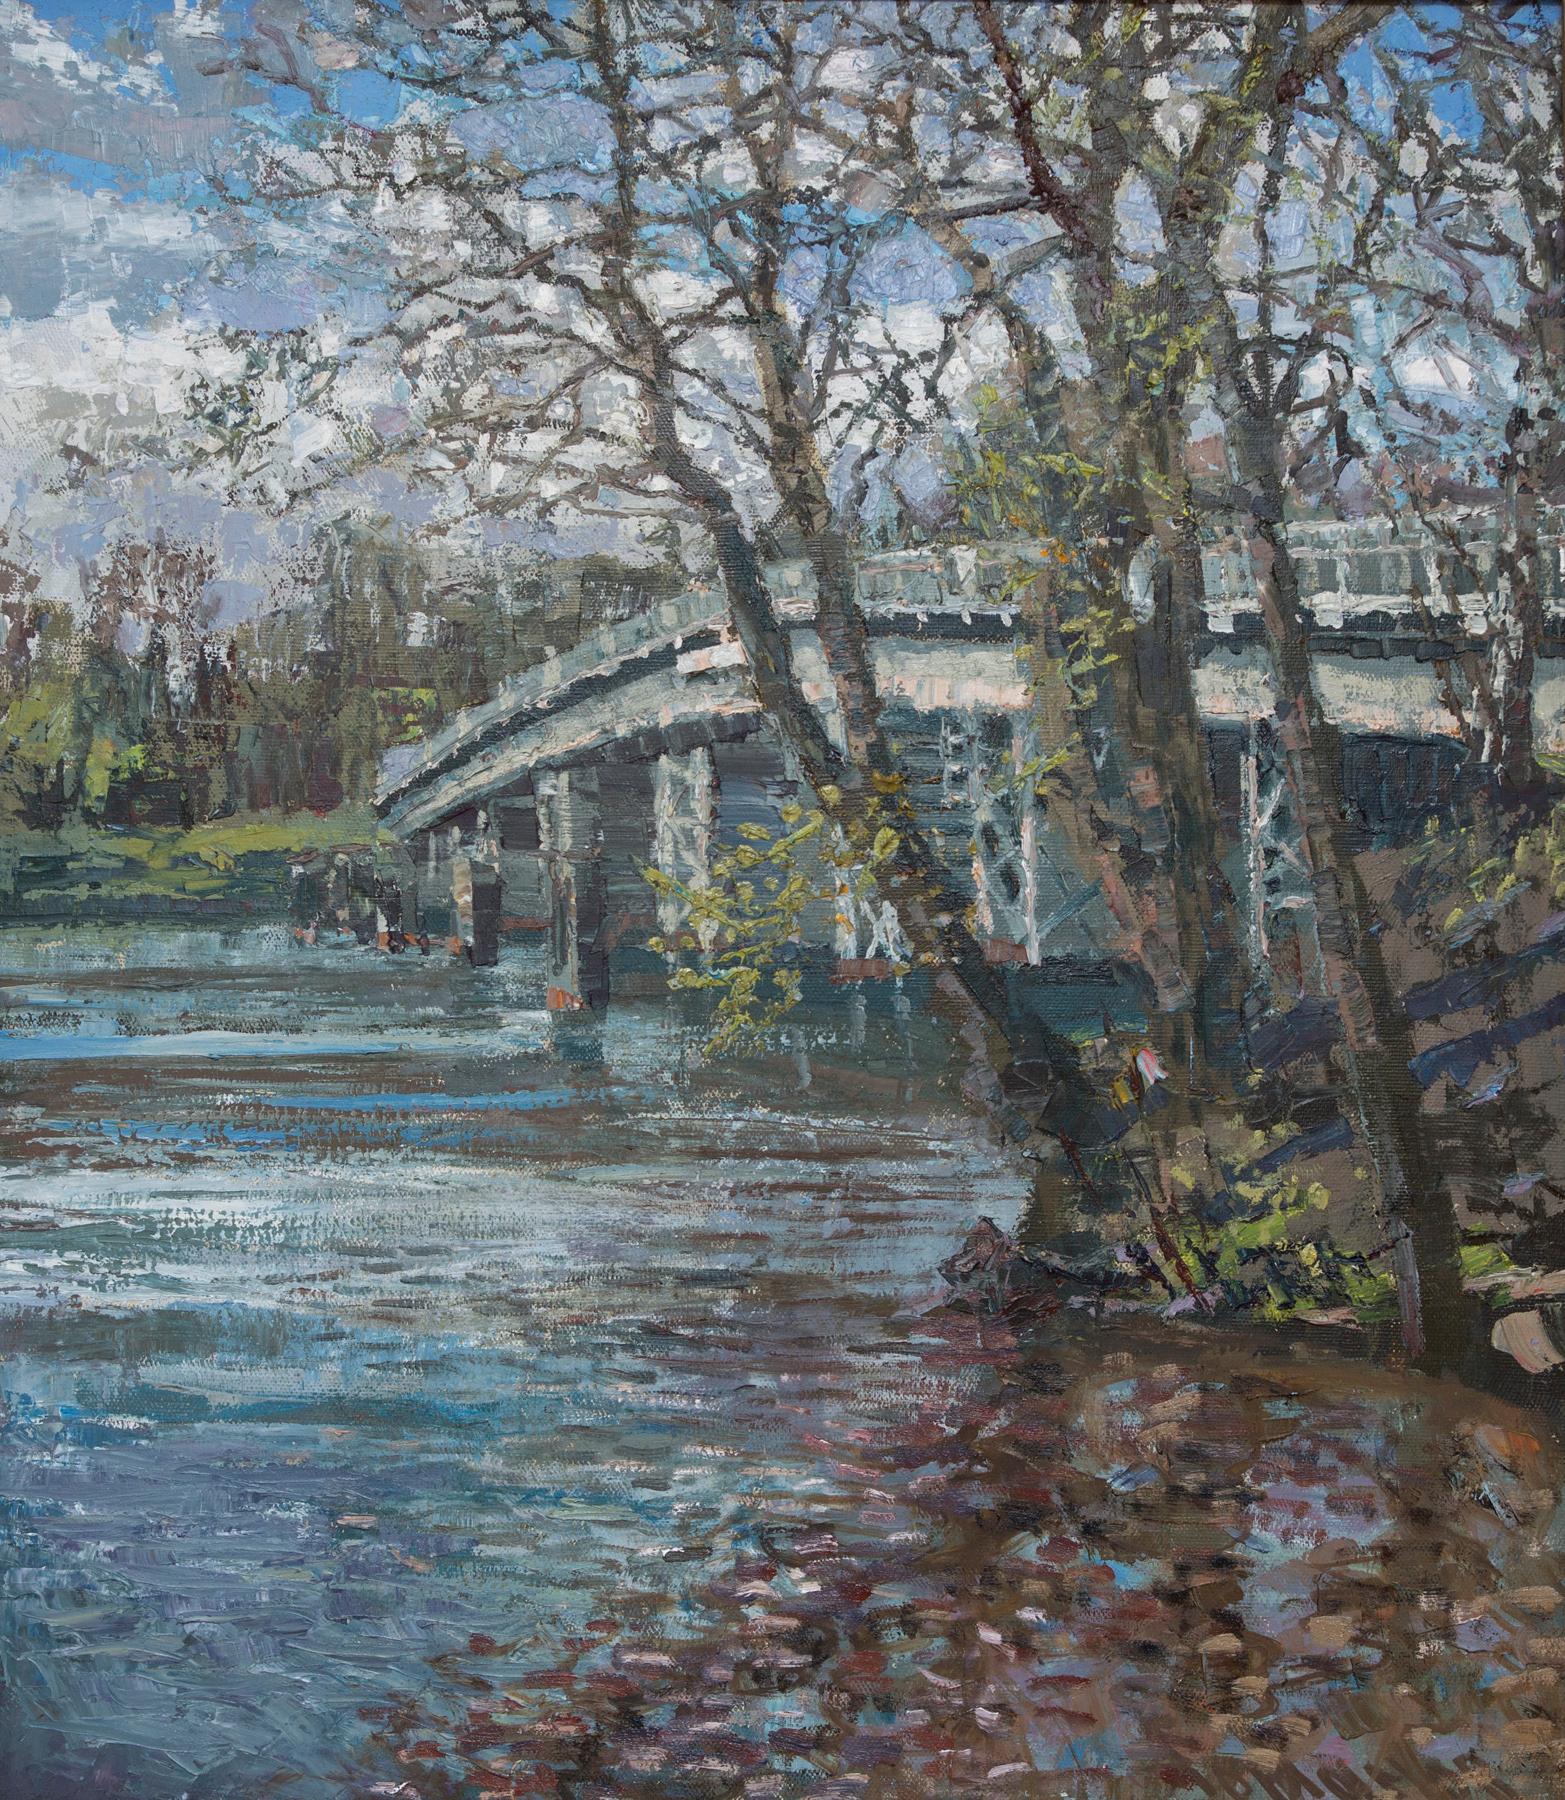 Елагин мост. Original modern art painting